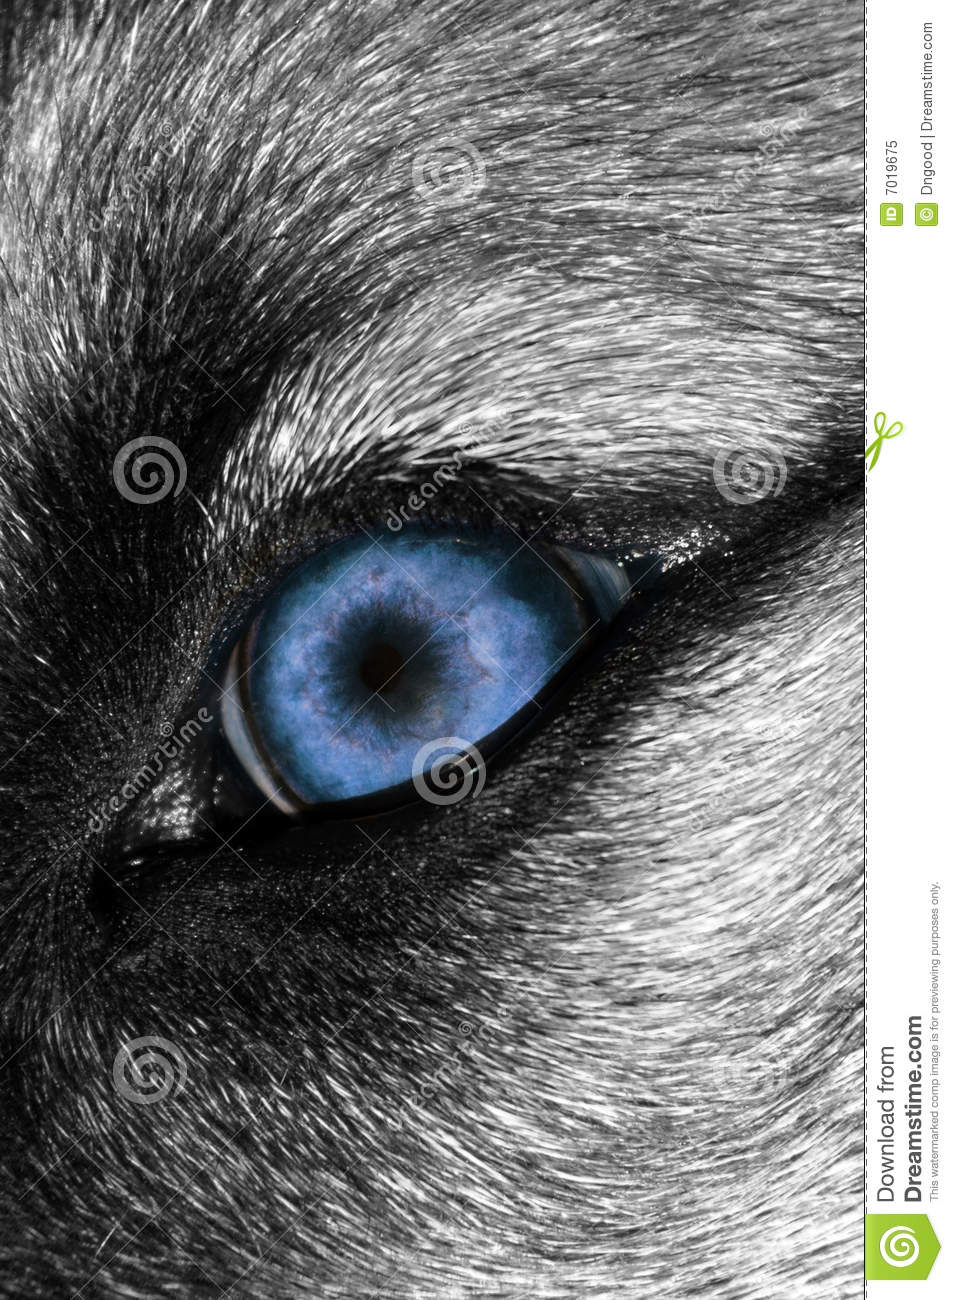 wolf eye macro